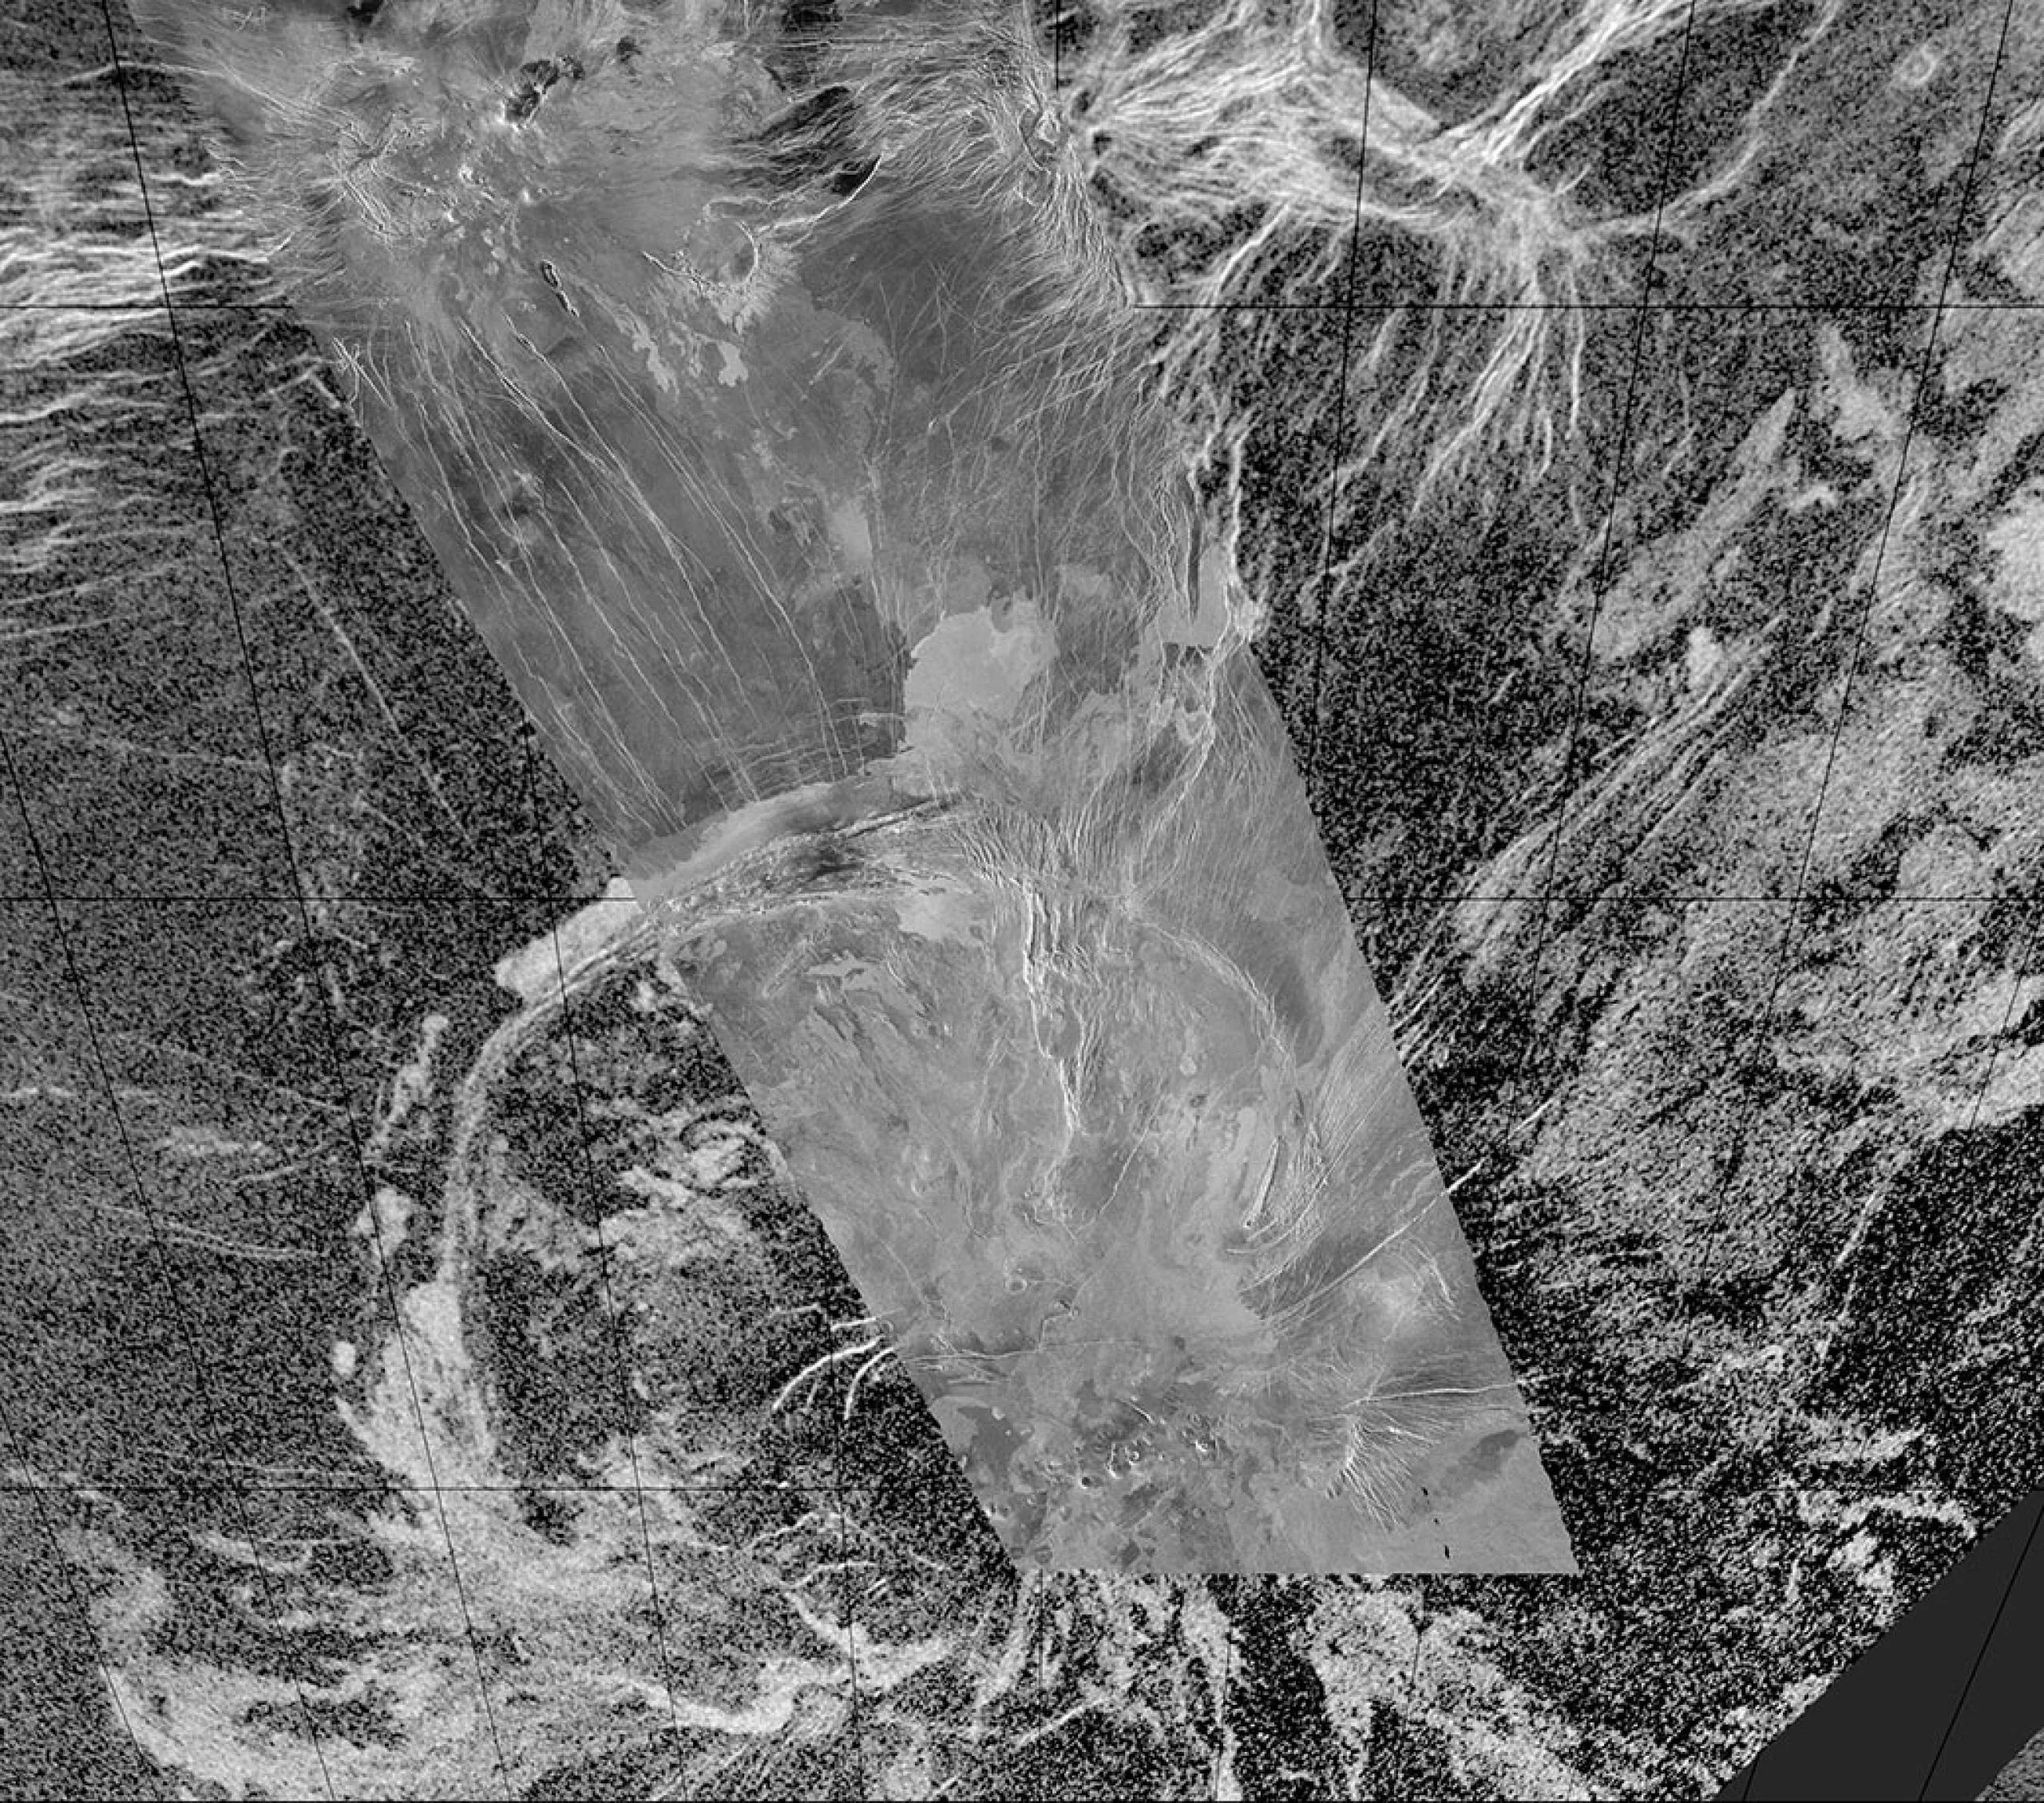 Esta imagen de radar compuesta de la corona Quetzalpetlatl fue creada superponiendo datos de unas 70 órbitas de la misión Magallanes de la NASA en una imagen obtenida por el radiotelescopio del Observatorio de Arecibo en Puerto Rico. El borde de la corona indica una posible actividad tectónica. Créditos: NASA/JPL-Caltech